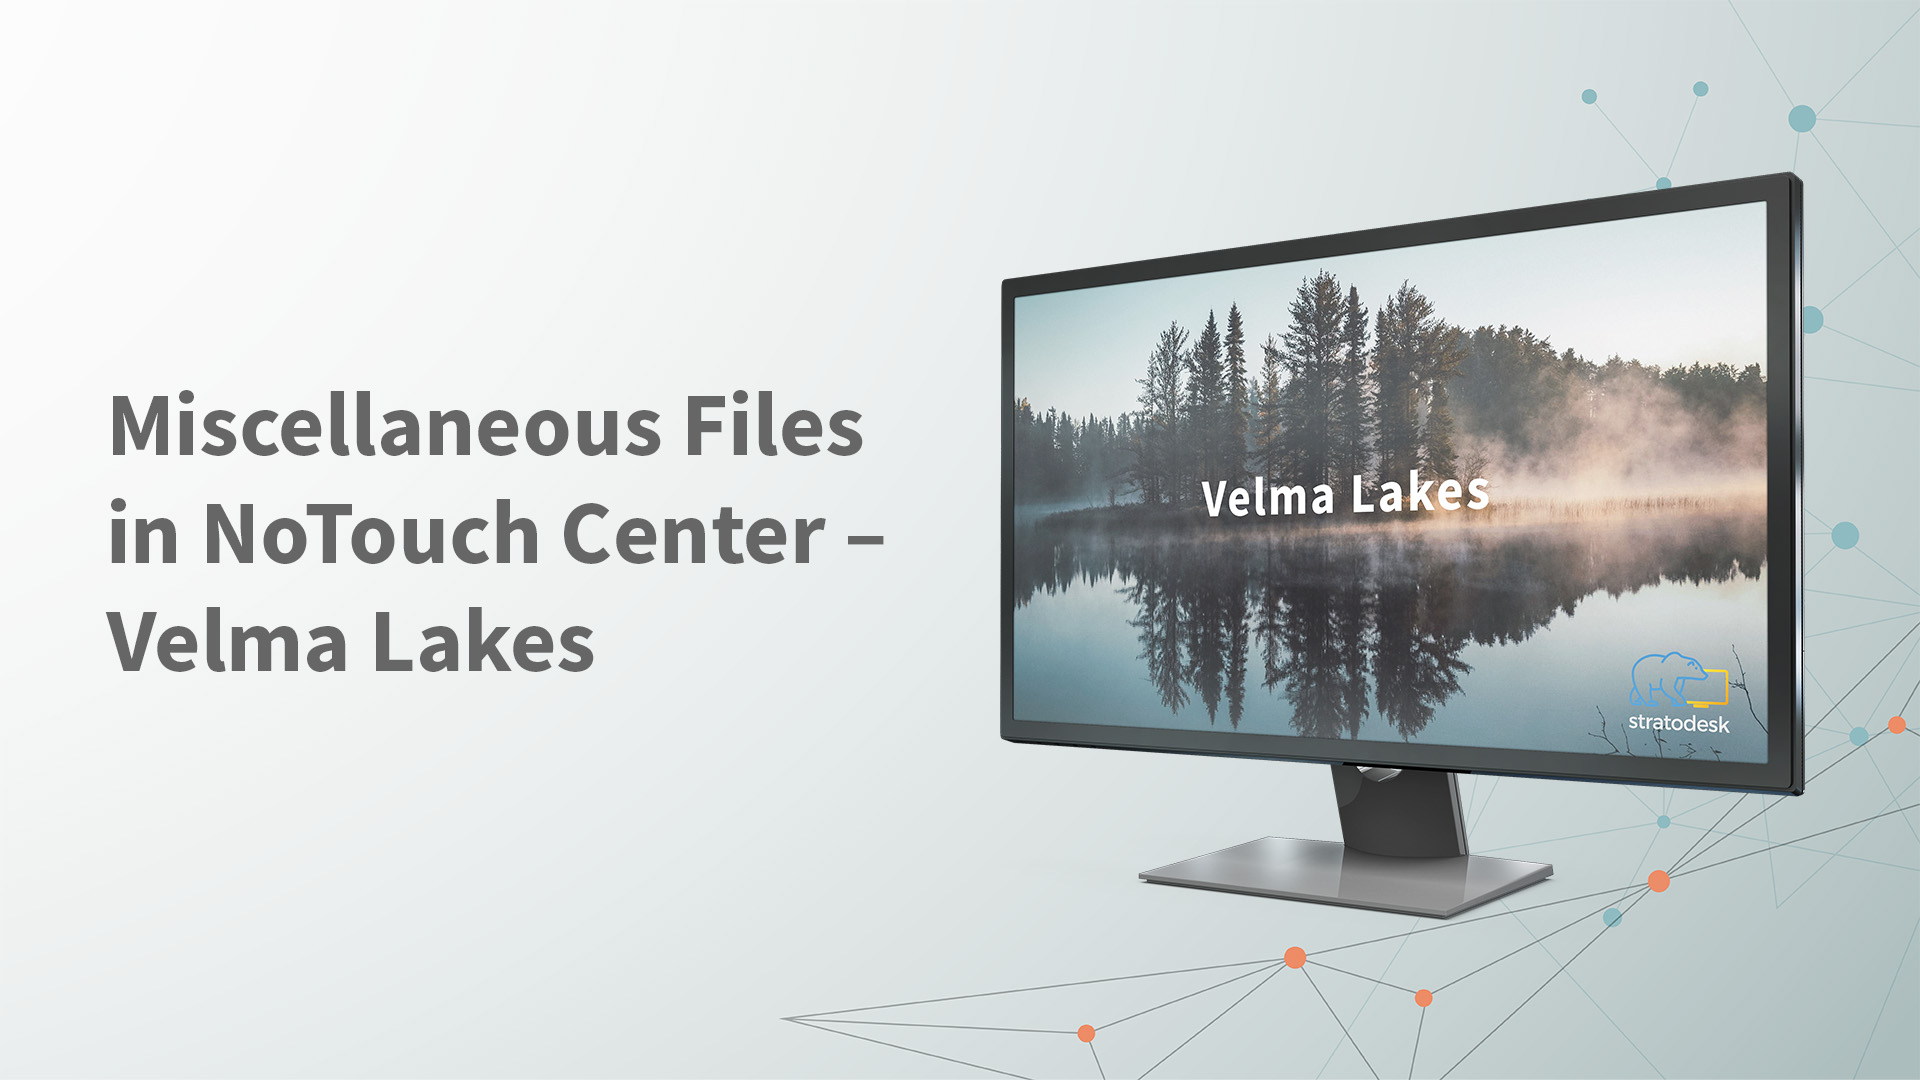 Miscellaneous Files in Velma Lakes